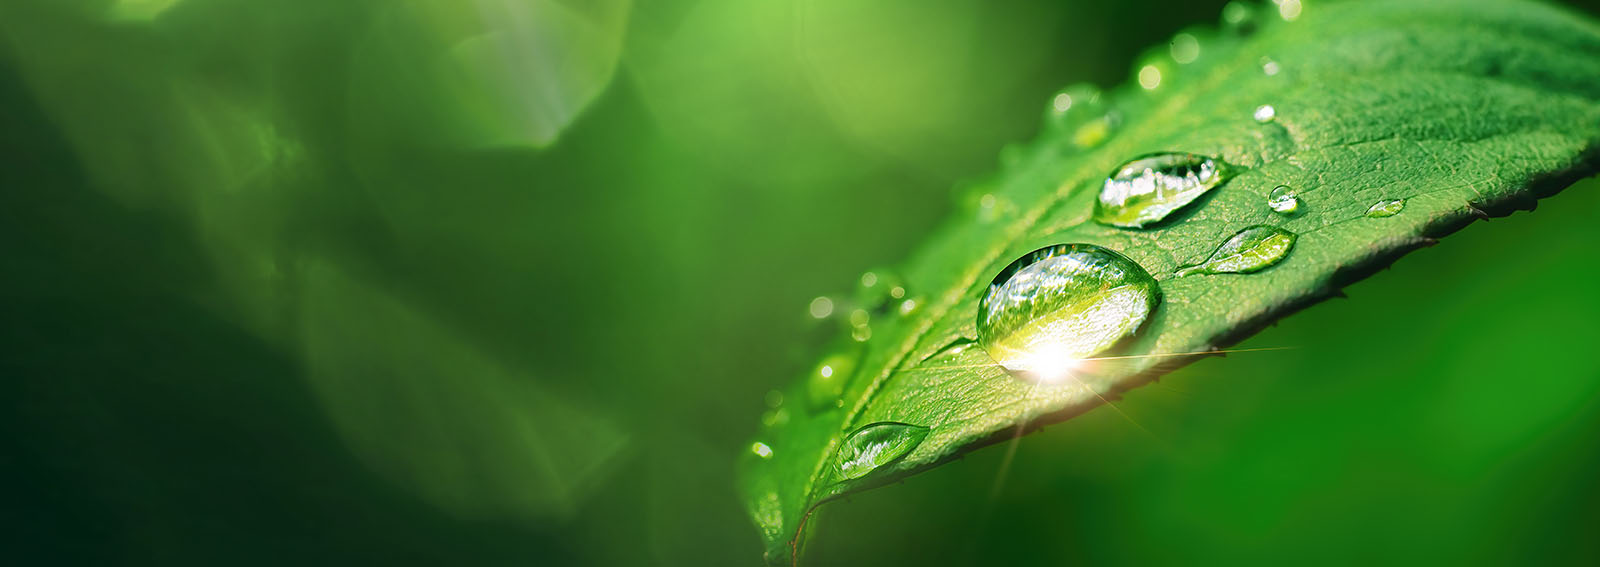 morning dew on a leaf